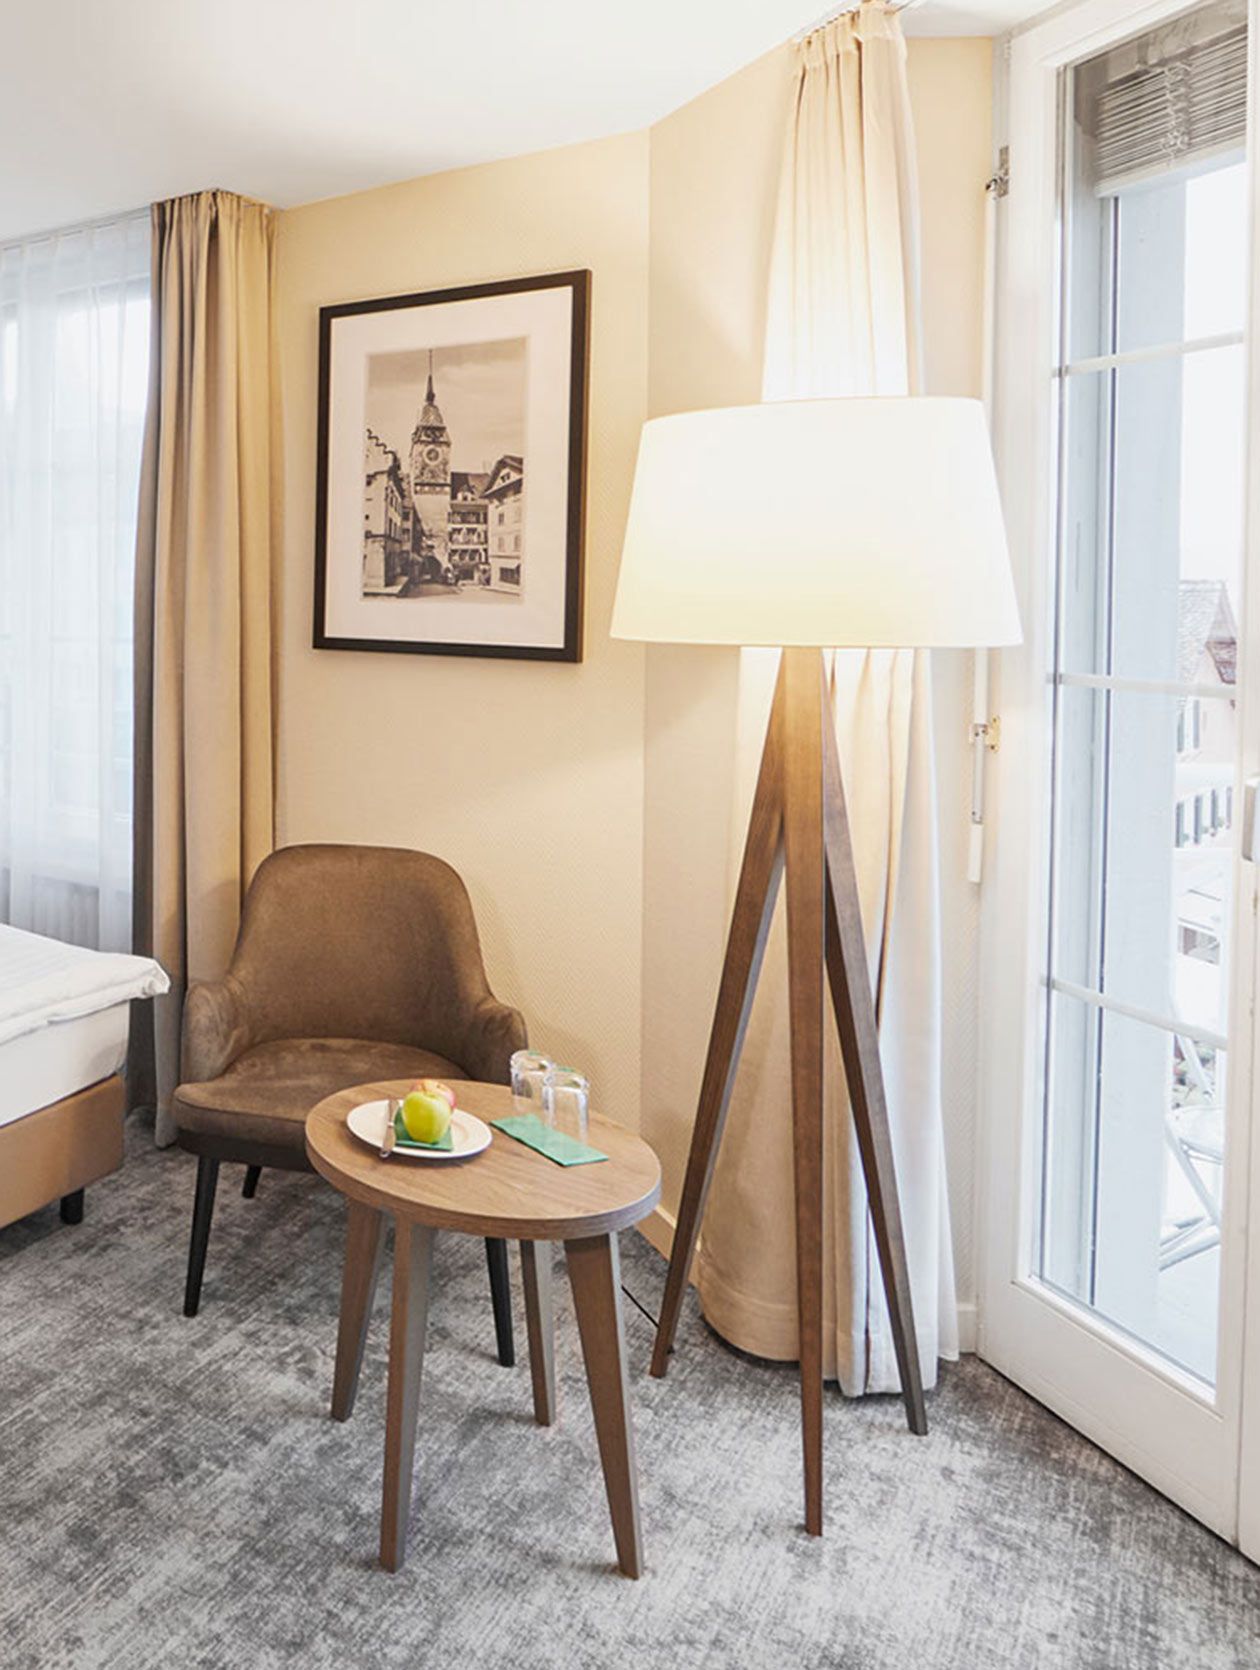 Brauner Stuhl mit passender Stehlampe im Hotel Loewen am See